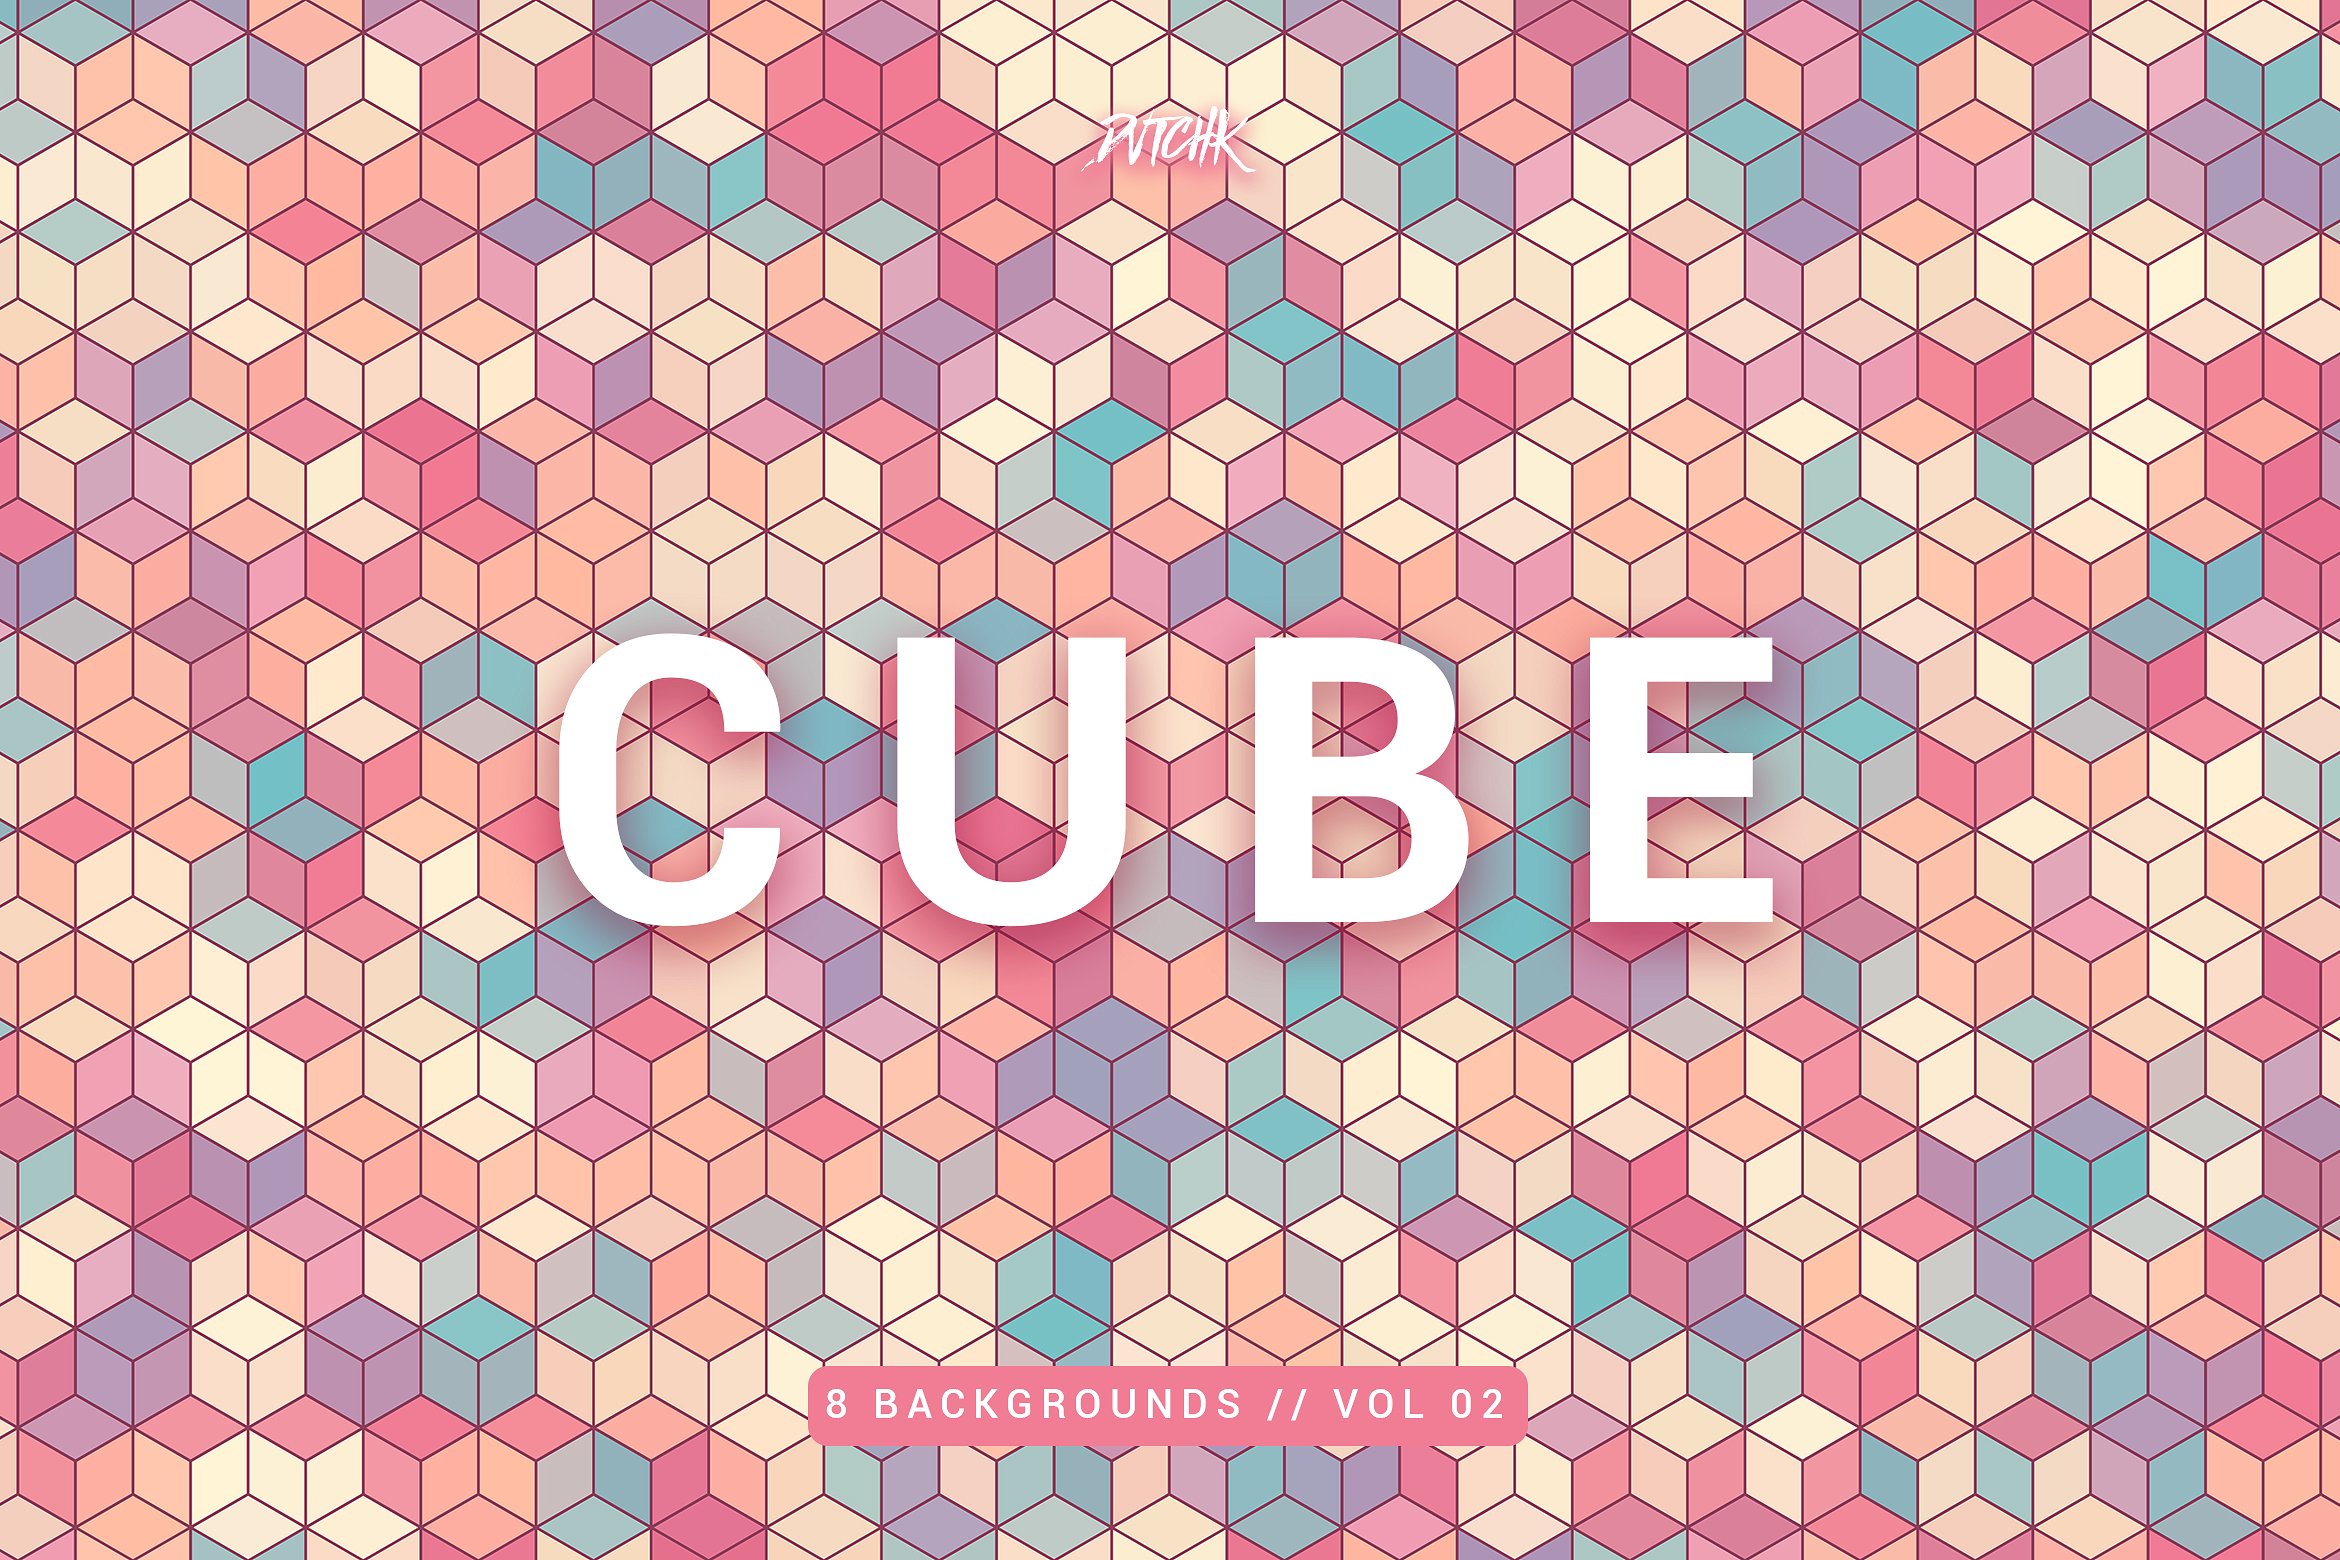 立方体镶嵌背景v2 Cube | Mosaic Backgrounds | Vol. 02插图